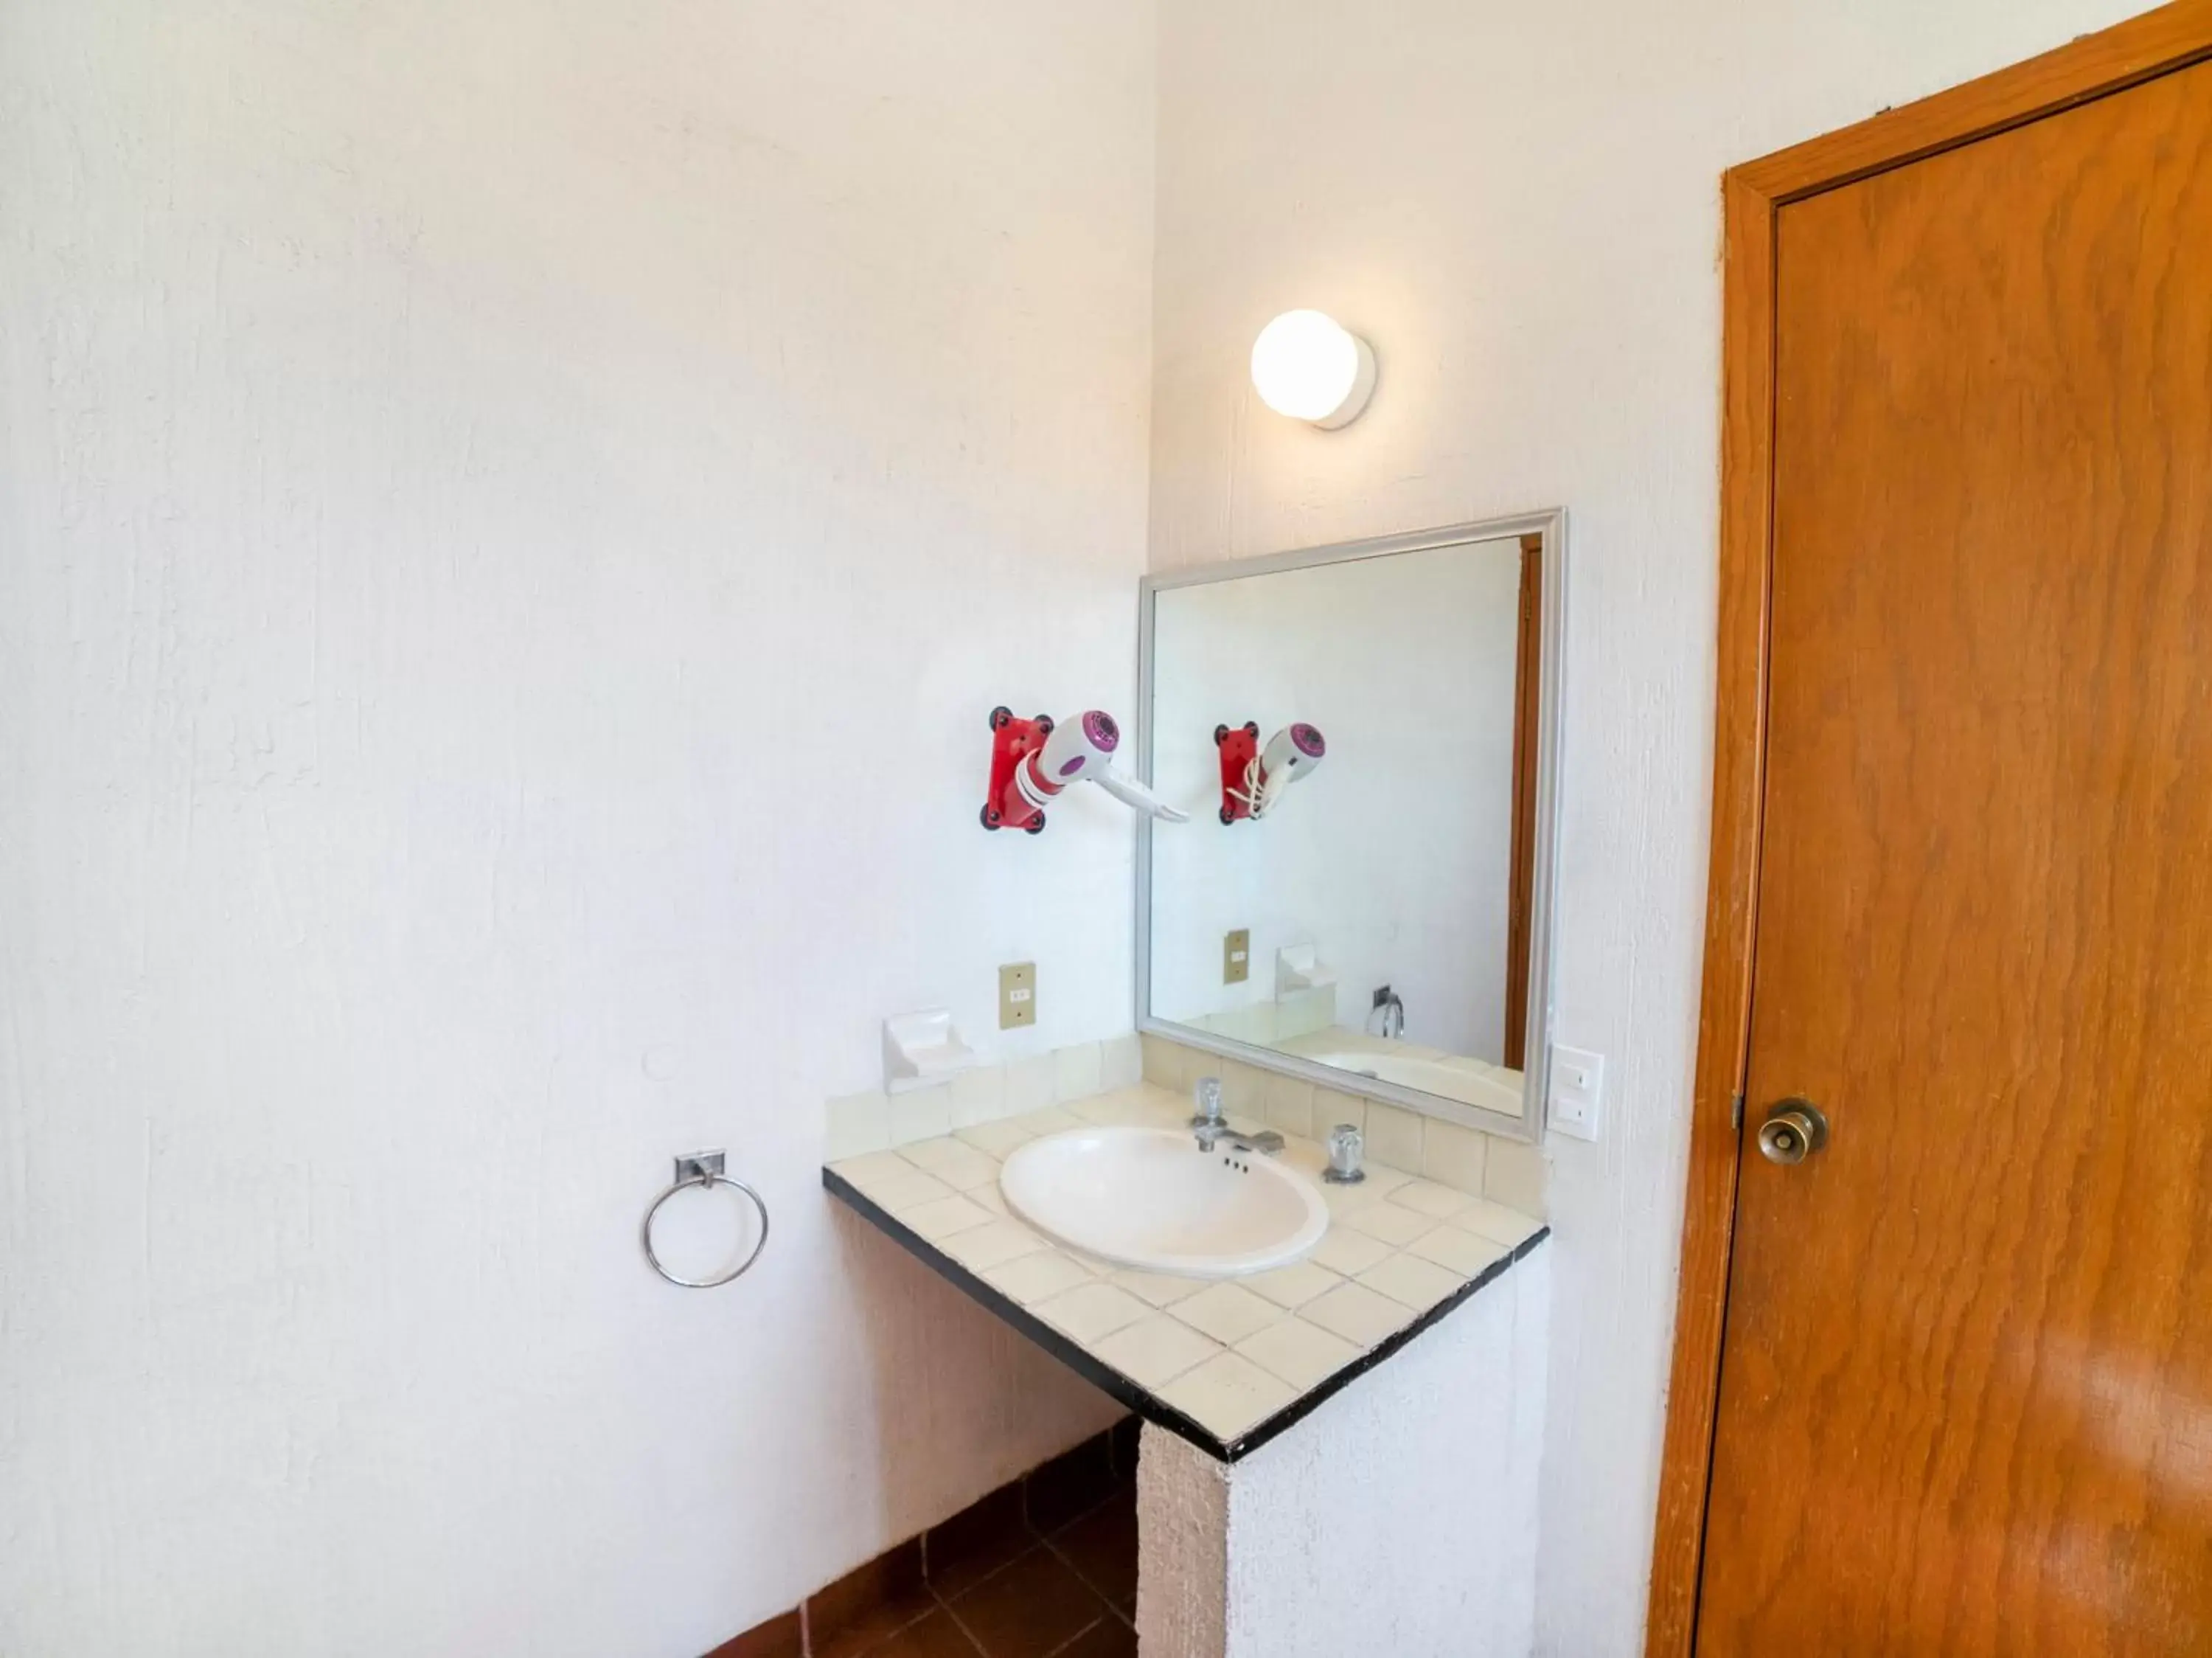 Bathroom in Hotel La Rinconada Santa Fe